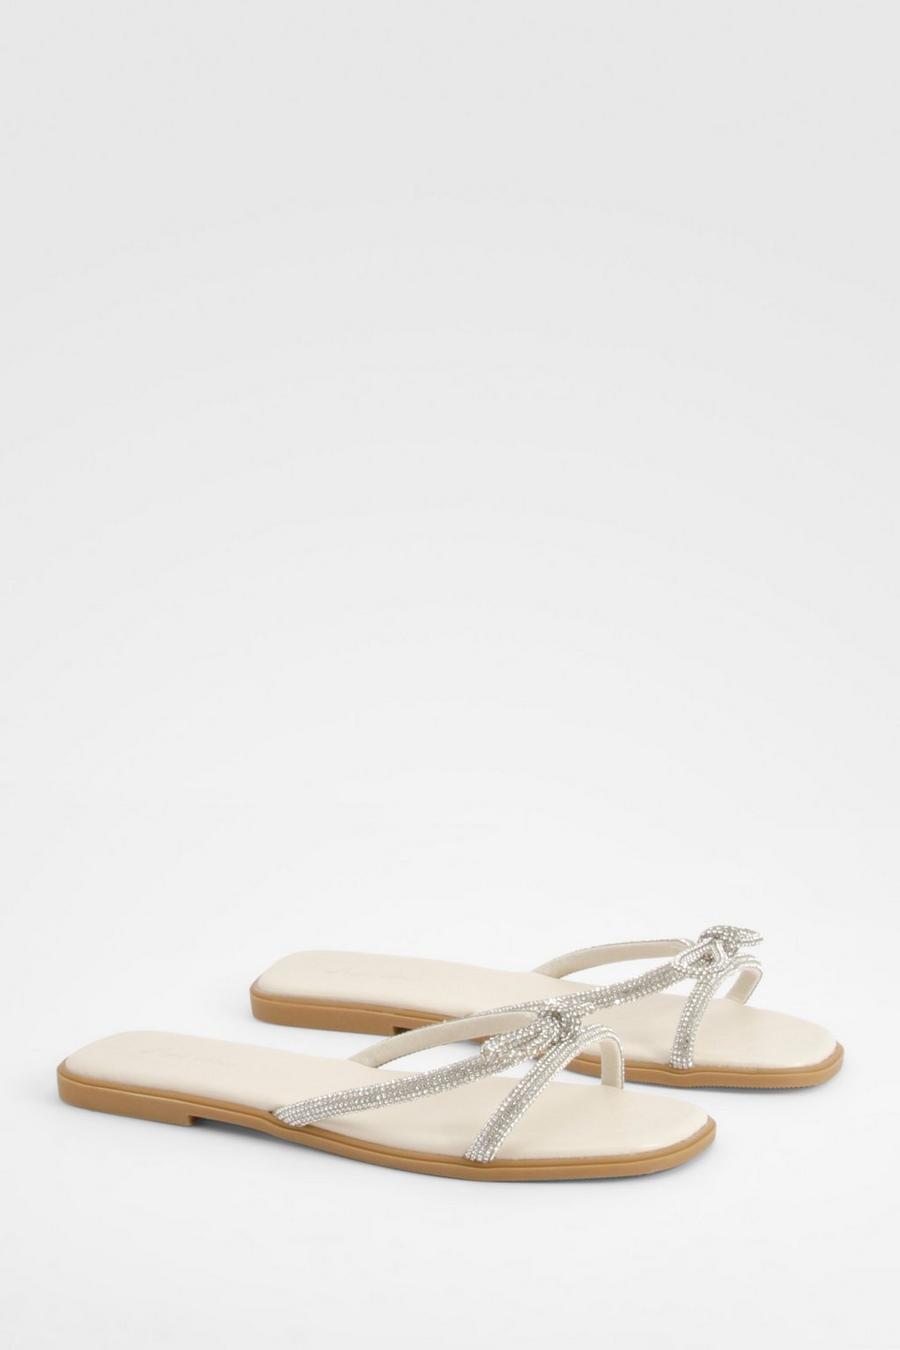 Sandalen mit Strass-Schleife, Cream